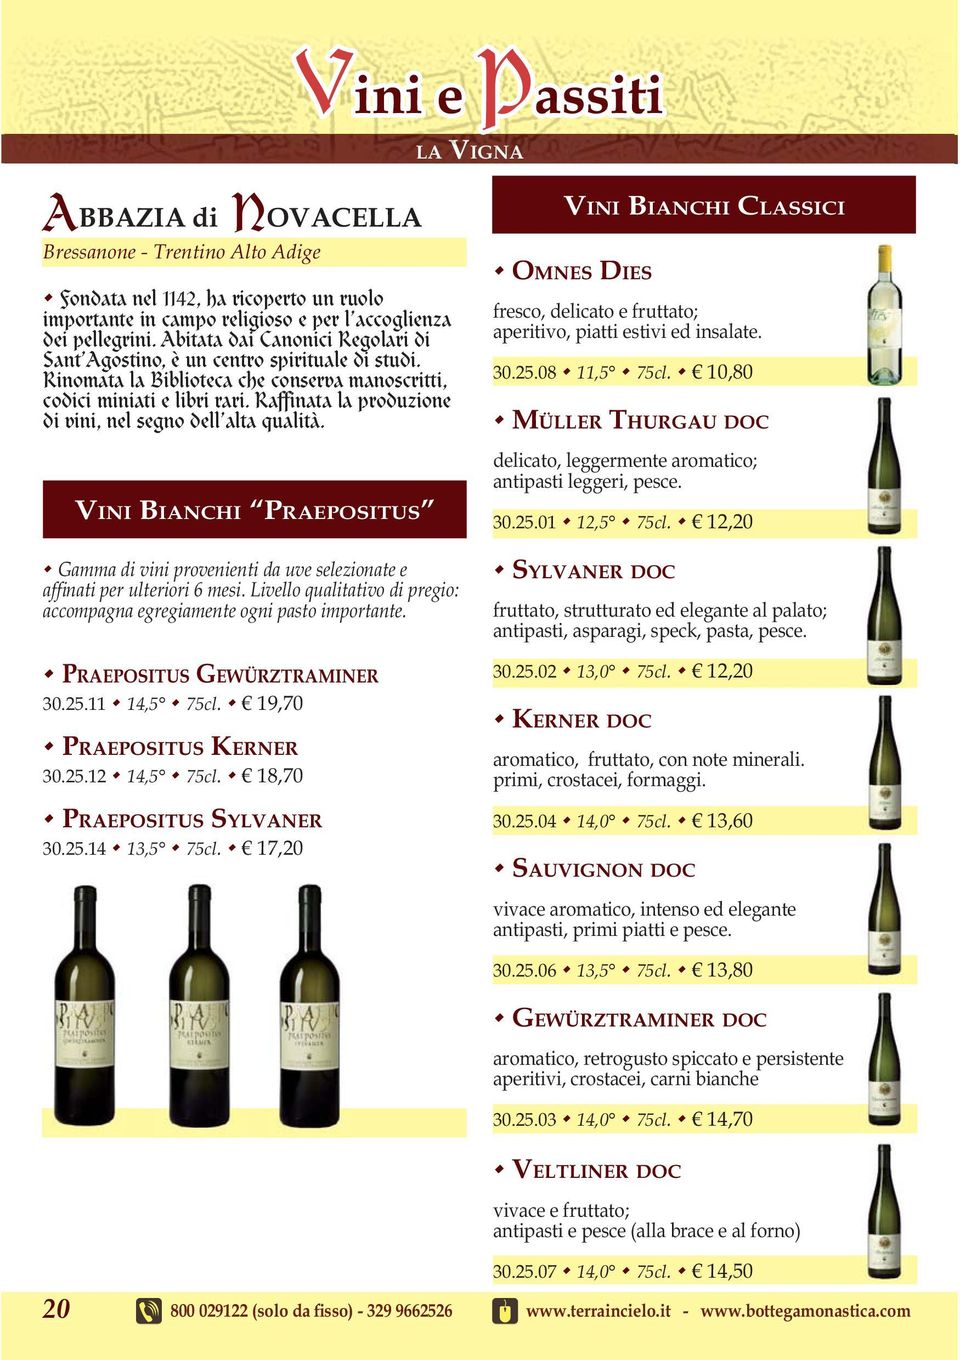 Raffinata la produzione di vini, nel segno dell alta qualità. VINI BIANCHI PRAEPOSITUS Gamma di vini provenienti da uve selezionate e af nati per ulteriori 6 mesi.